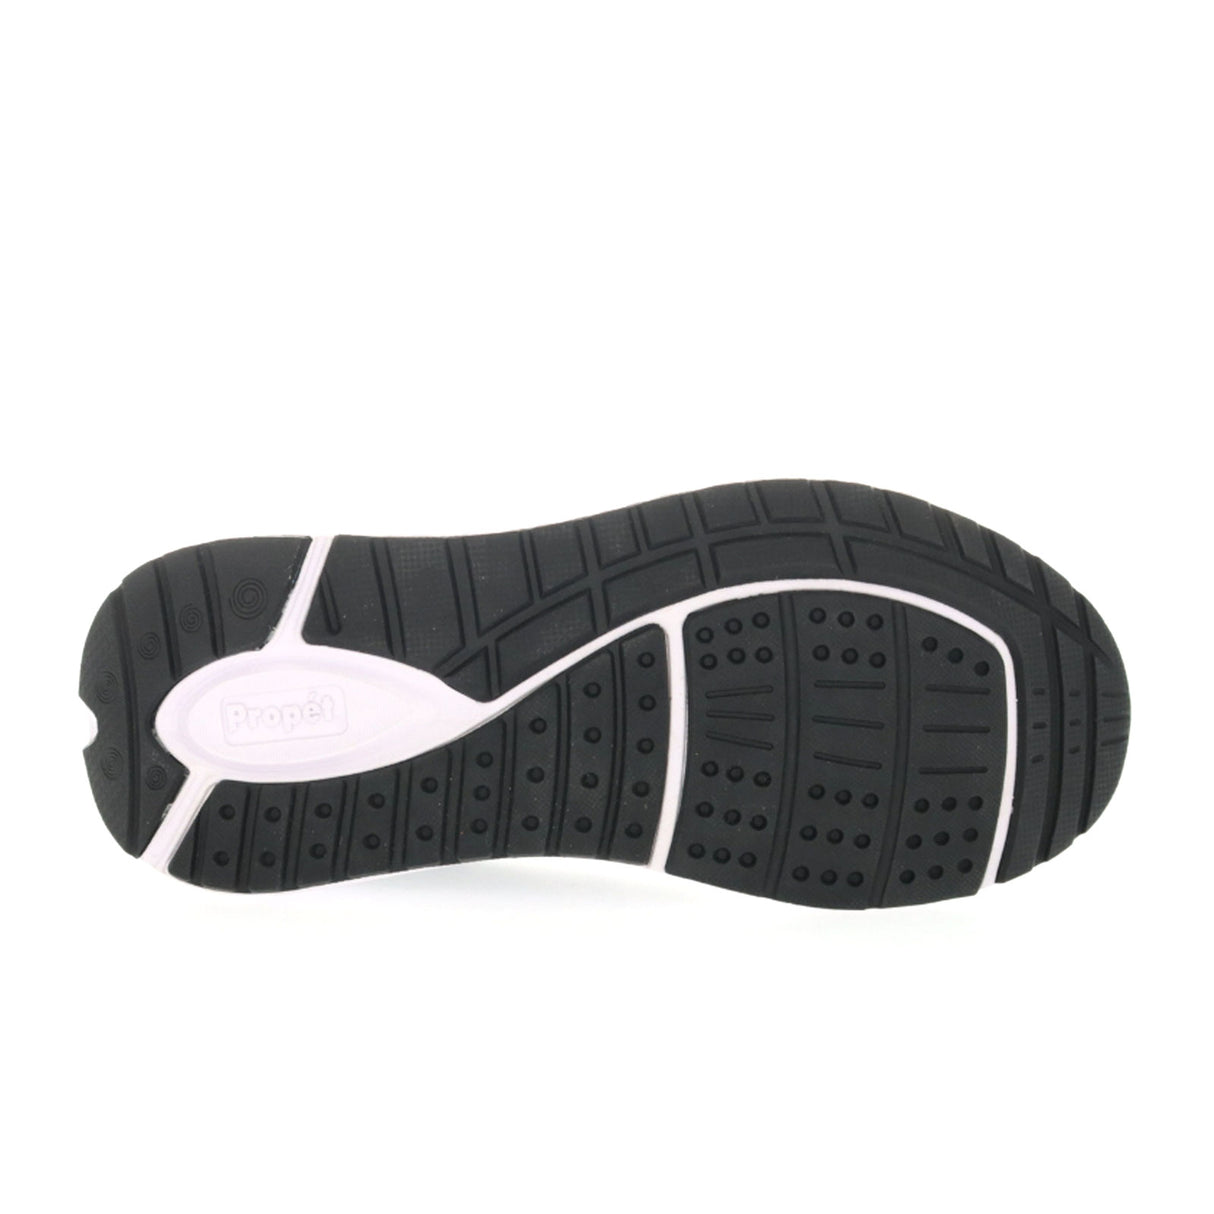 Propet Ultra Walking Shoe (Women) - Black/Grey Athletic - Walking - The Heel Shoe Fitters